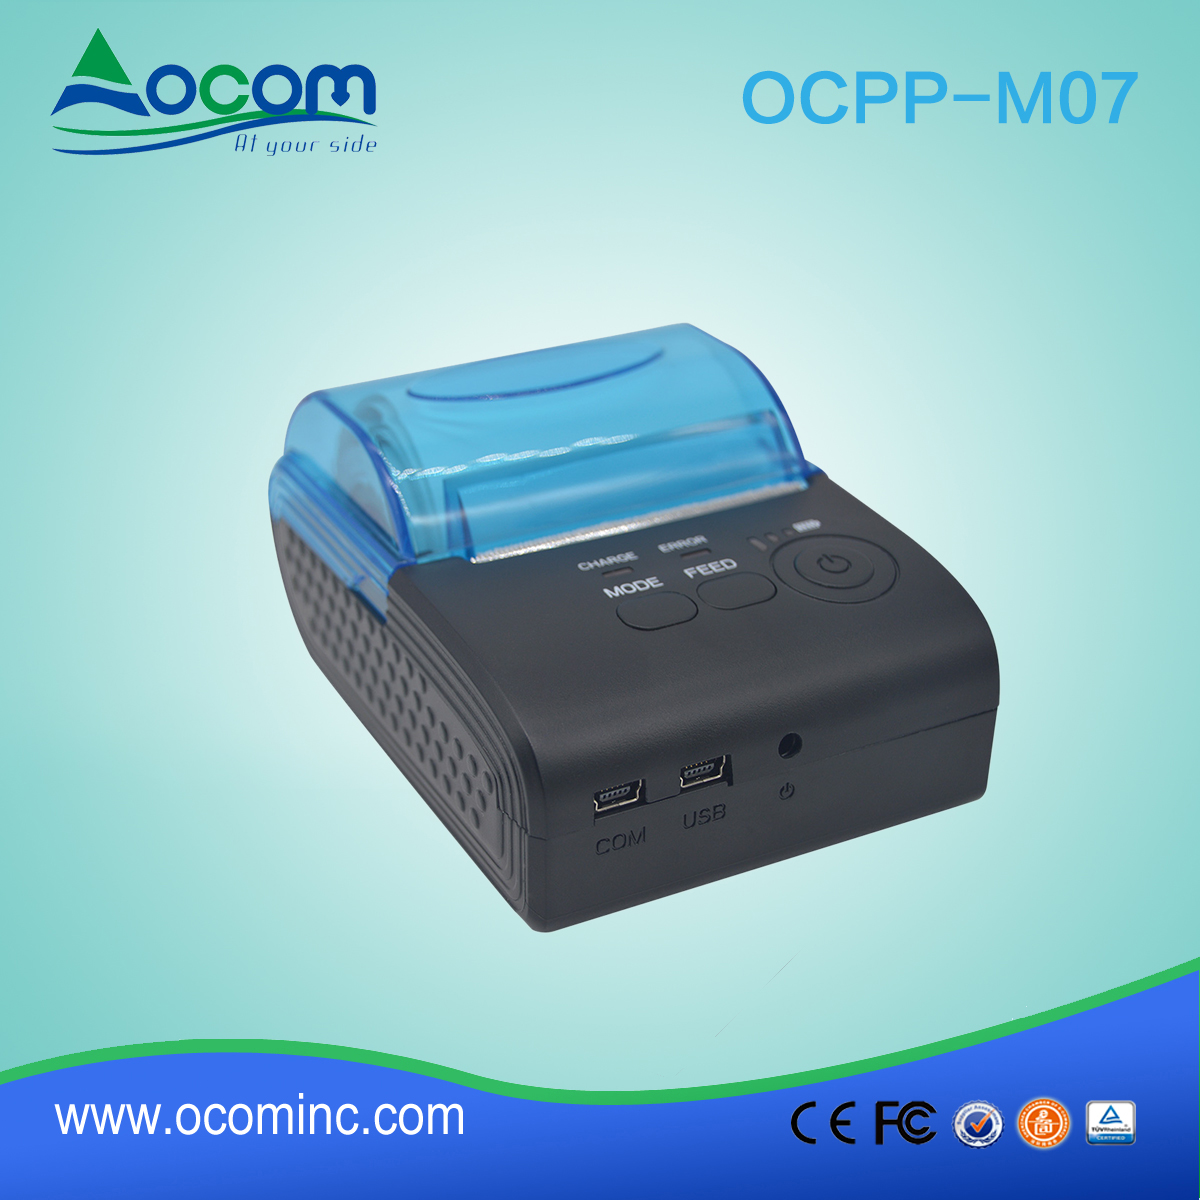 OCPP-M07 2017 портативный беспроводной bluetooth принтер для системы такси